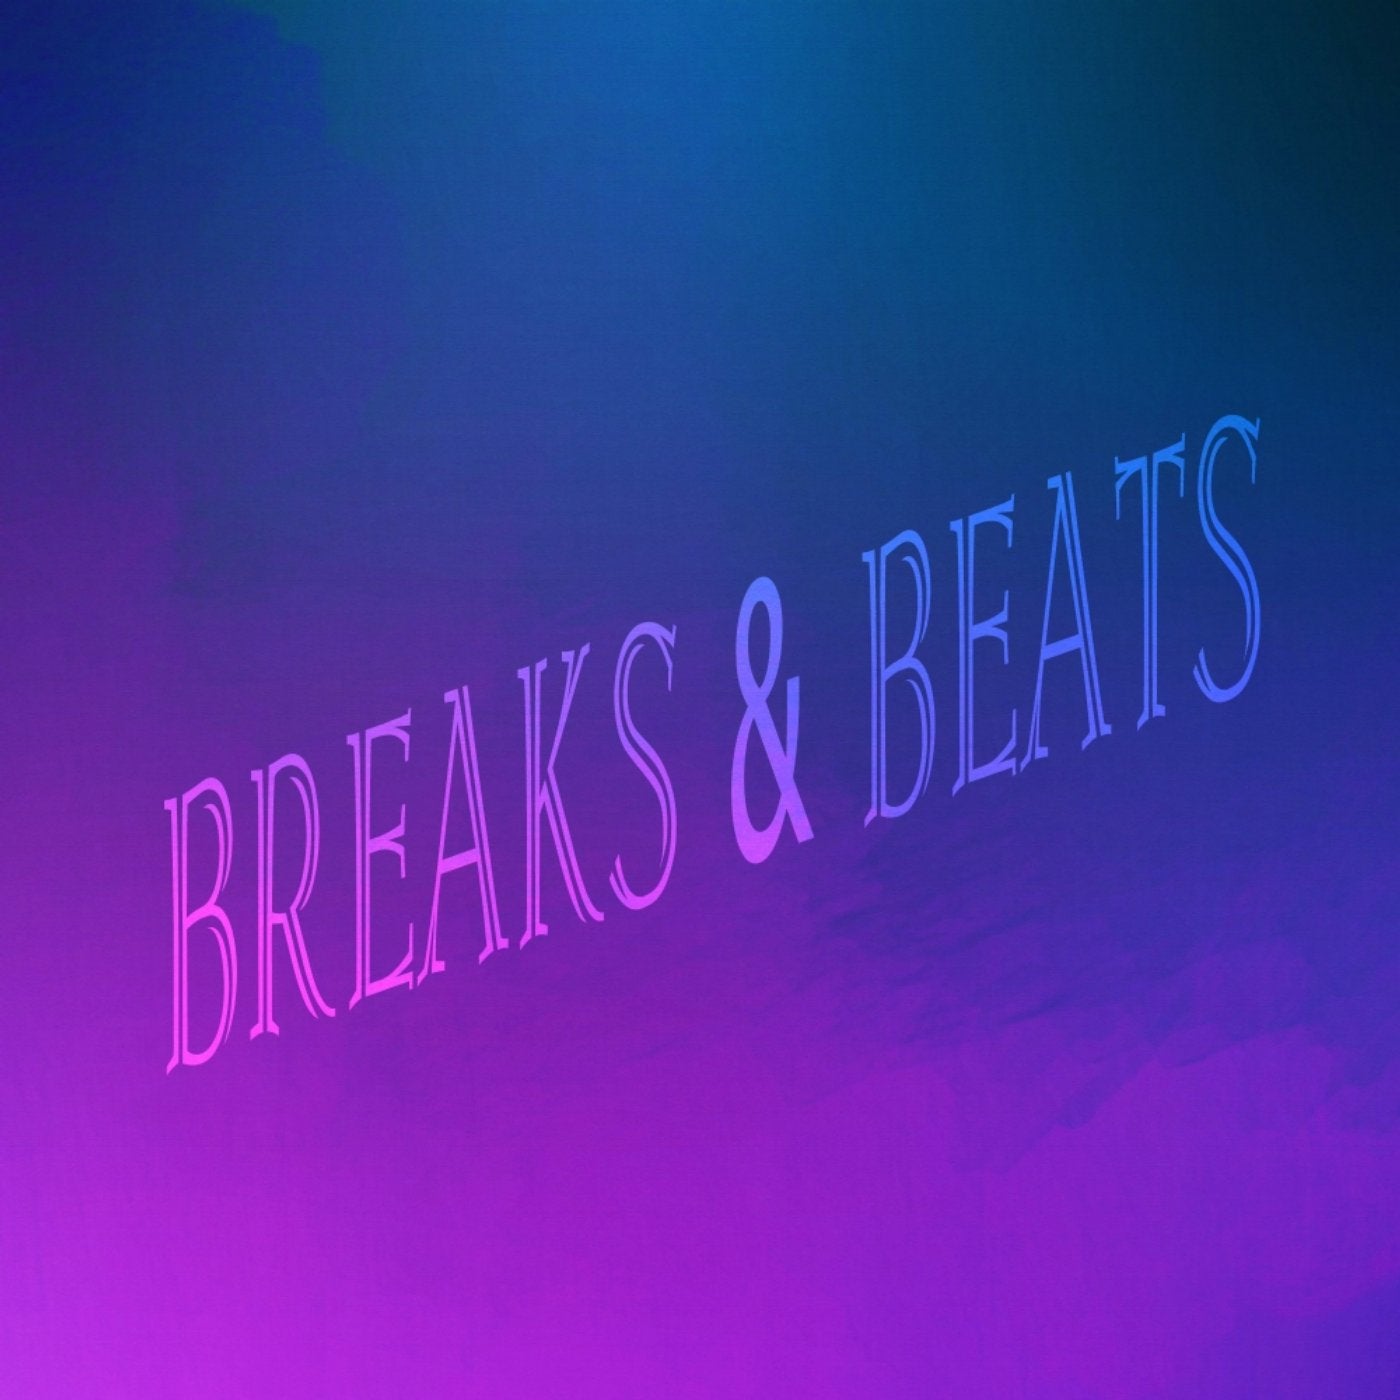 Breaks & Bets